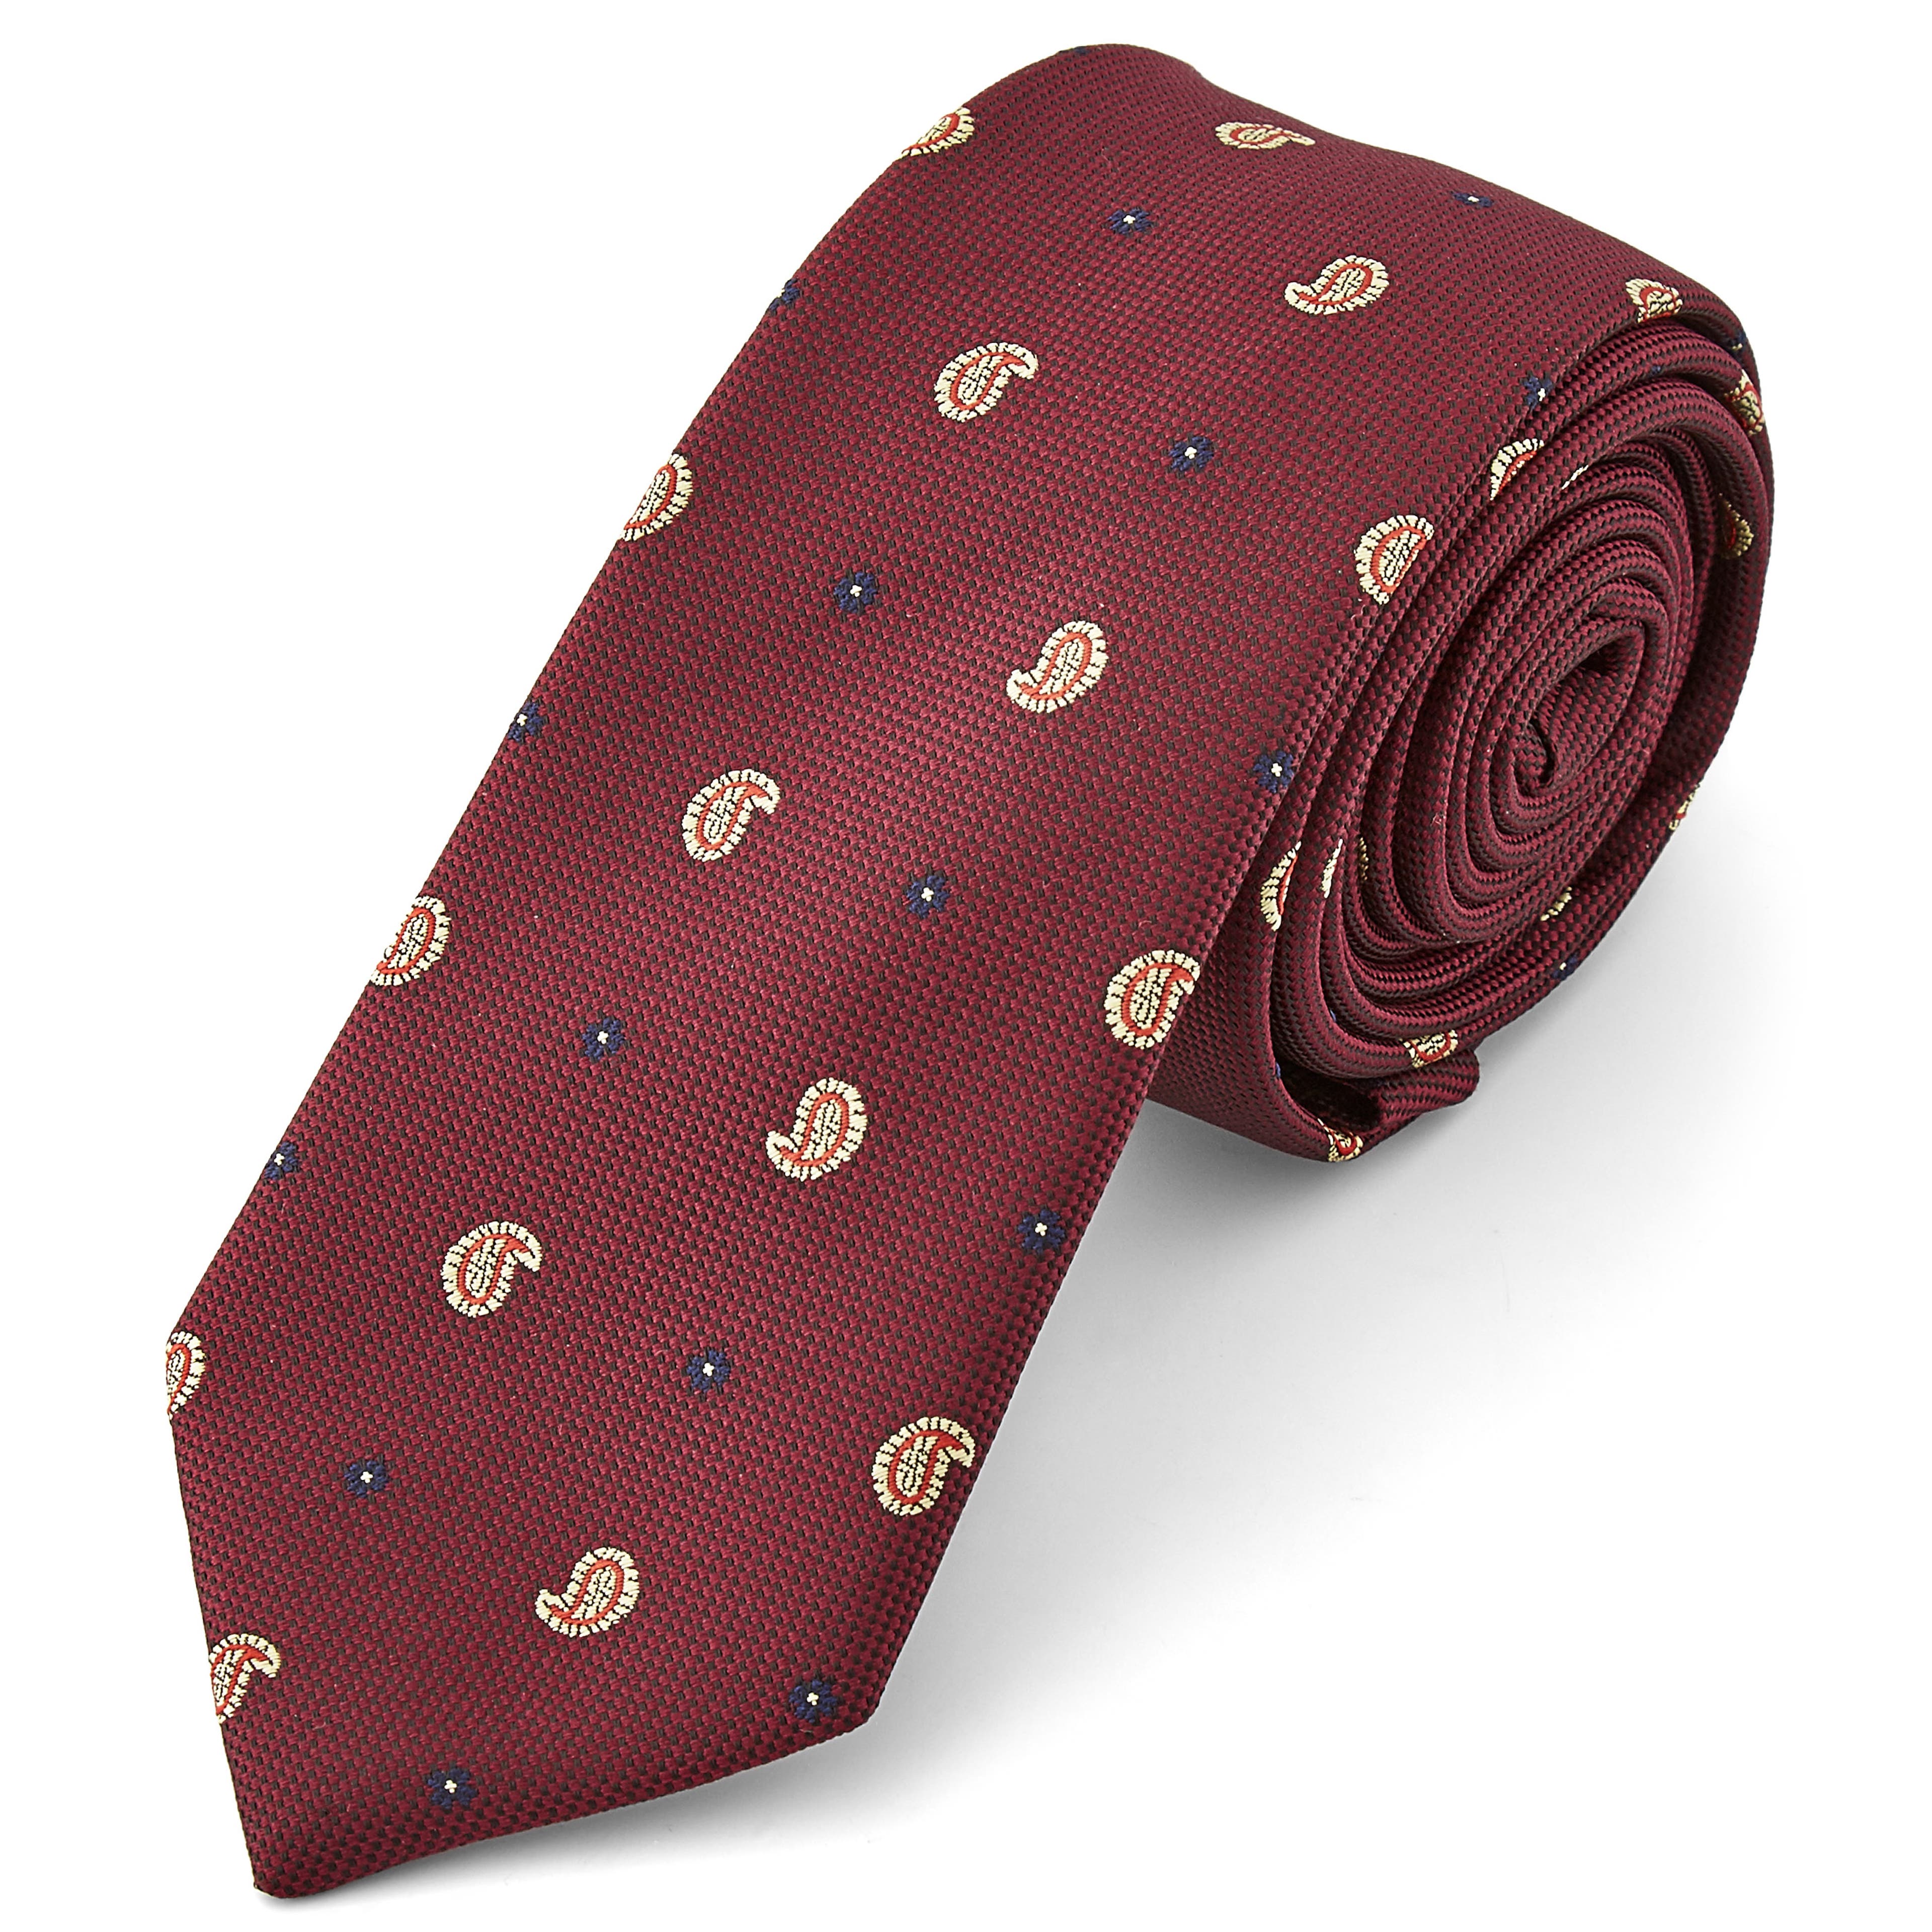 Cravate bordeaux motif virgule